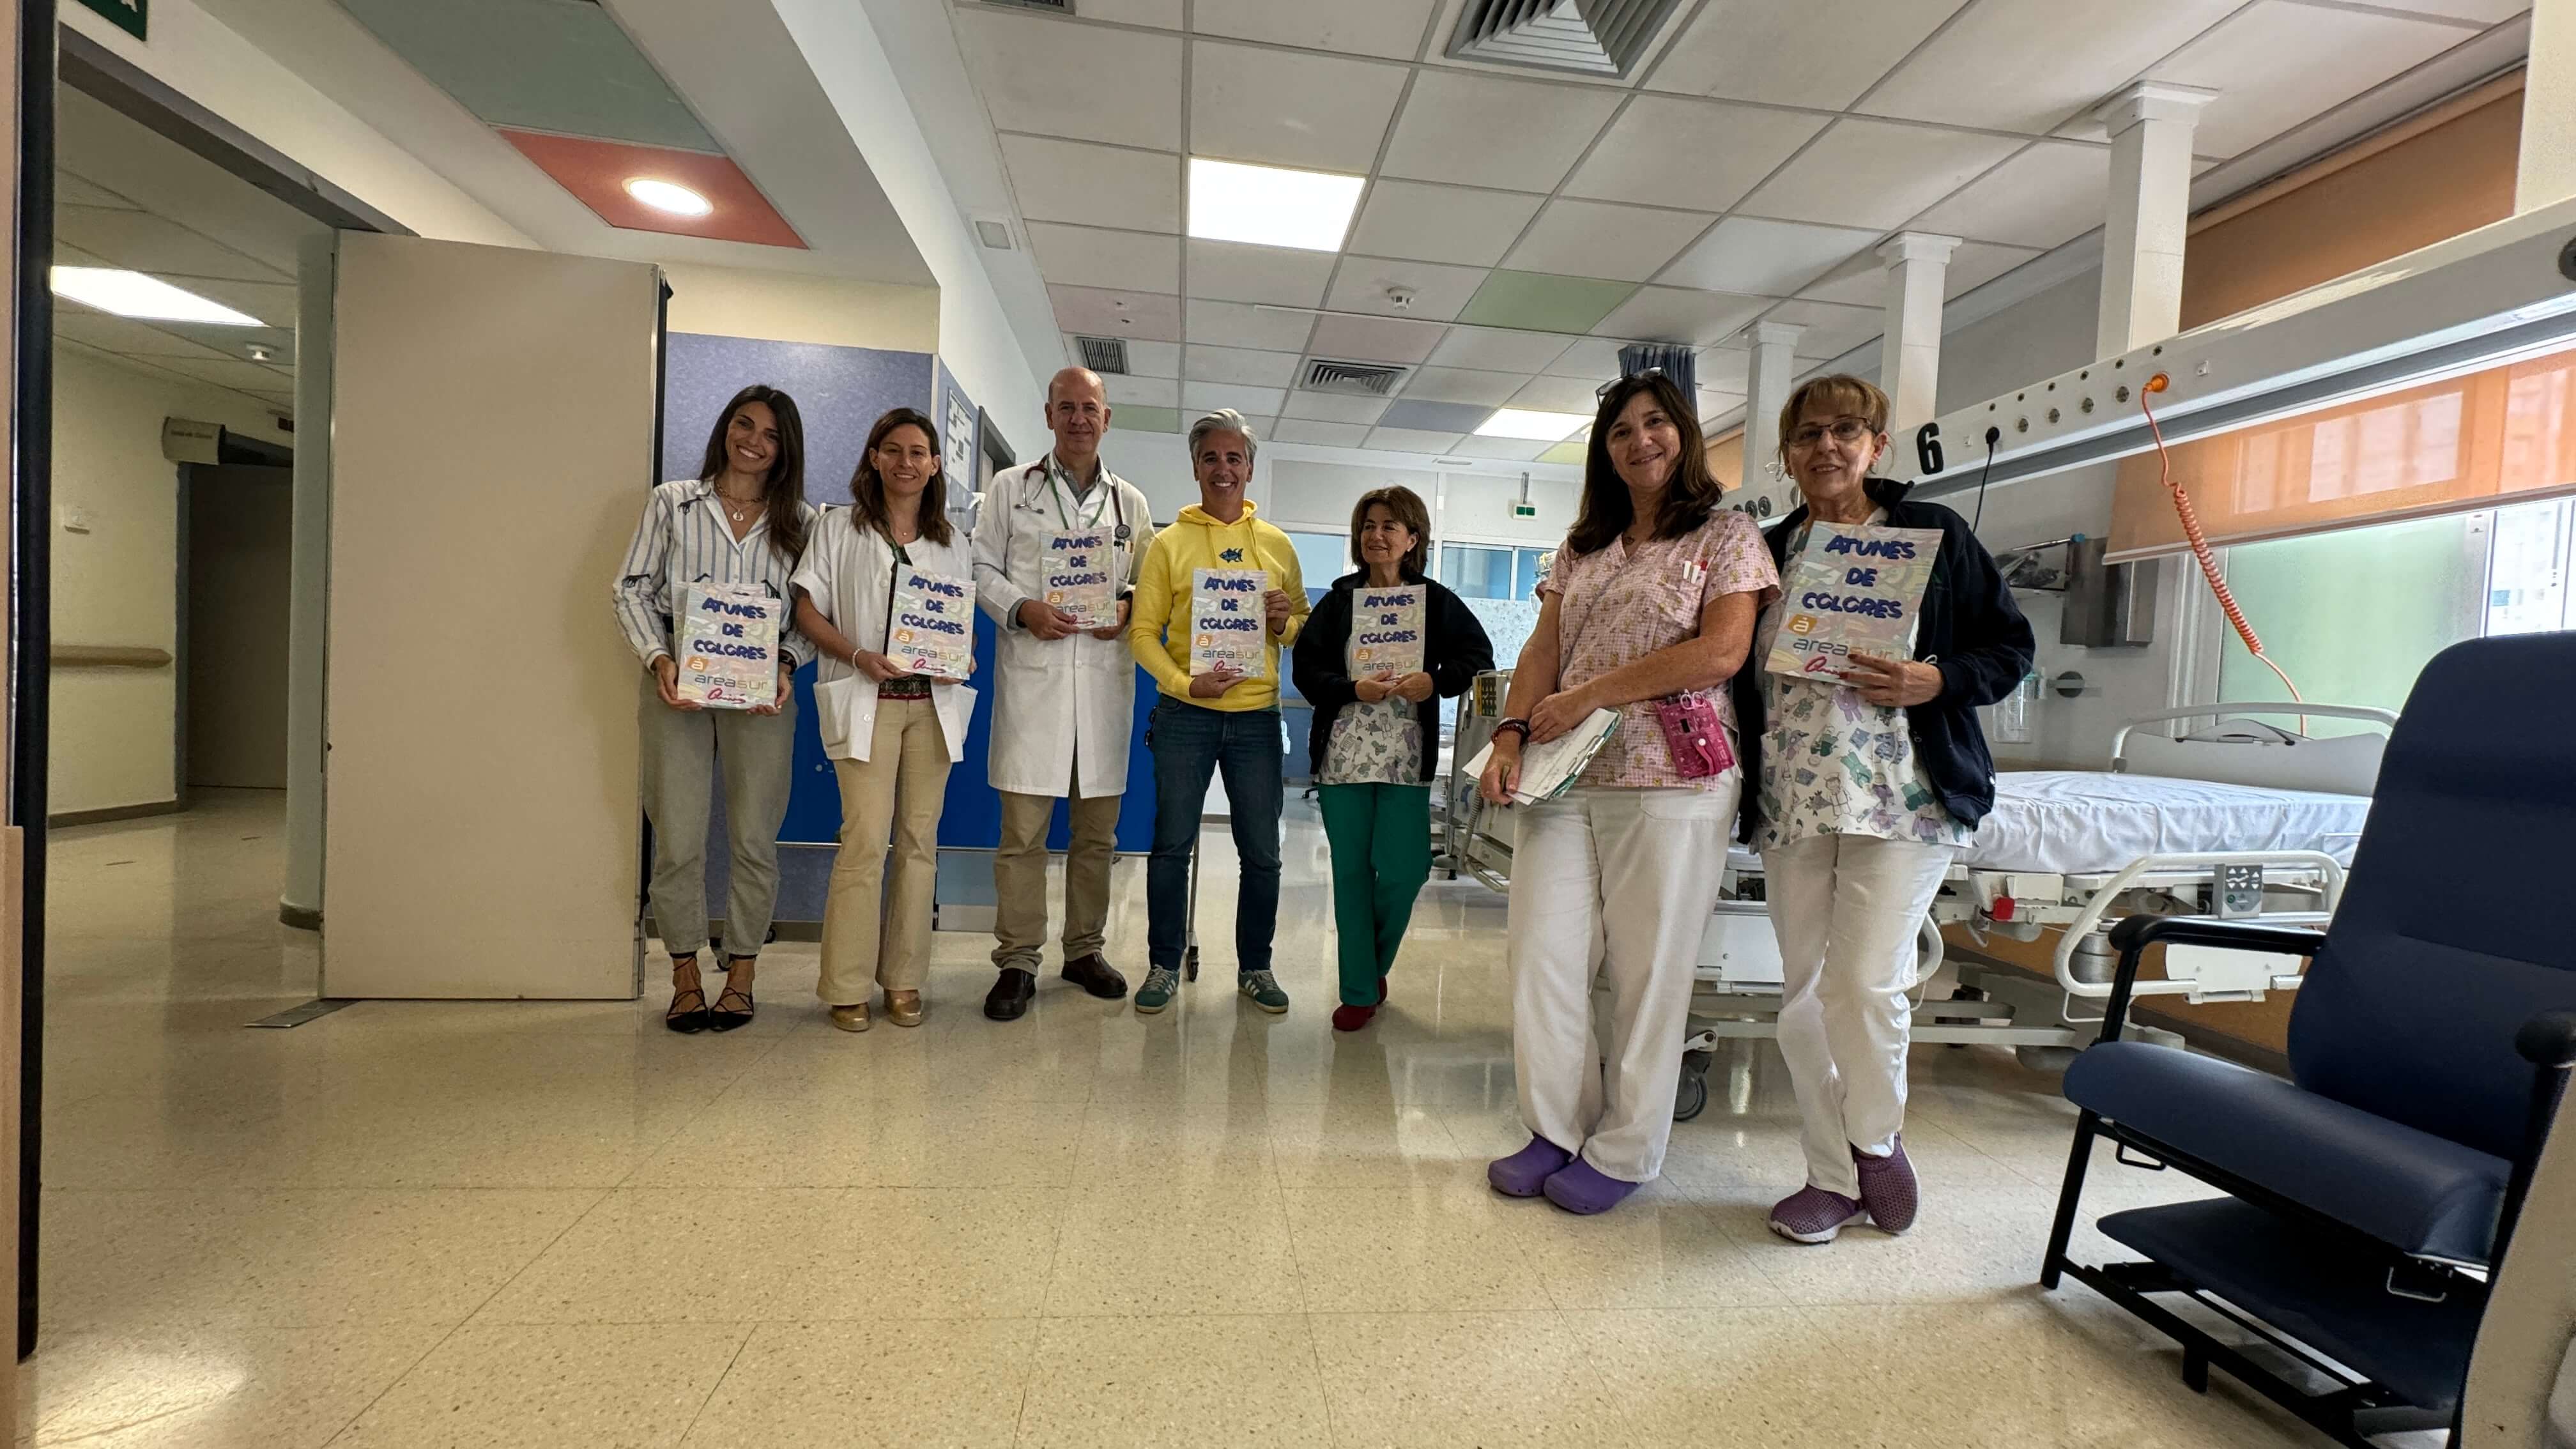  Libros para los pequeños internados en el Hospital de Jerez. Raquel LLamas y Fernando Quirós junto al personal sanitario de pediatría. 